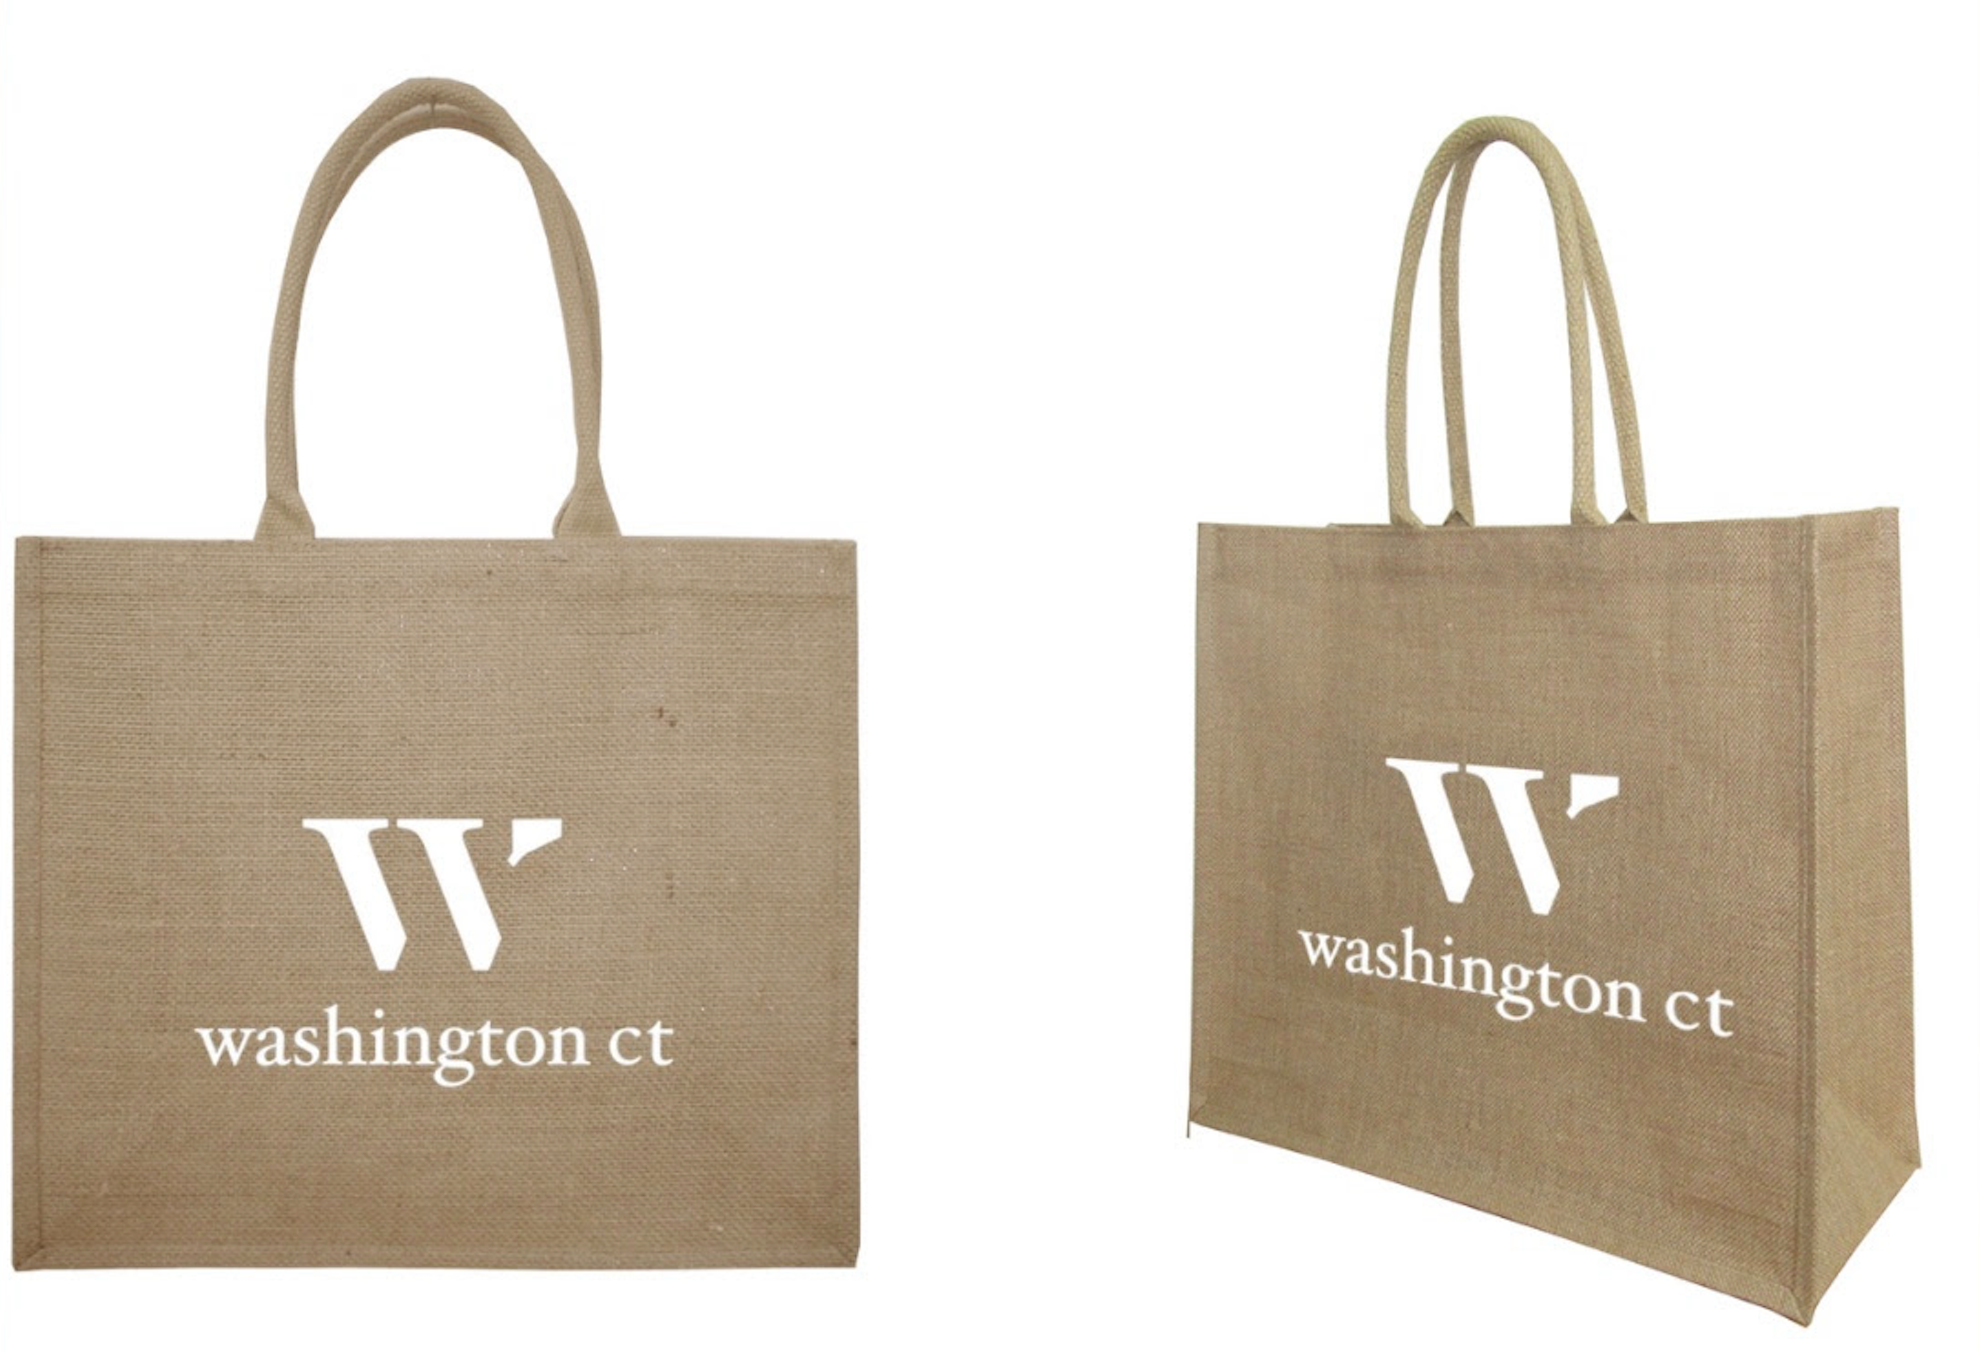 Washington Tote Bag